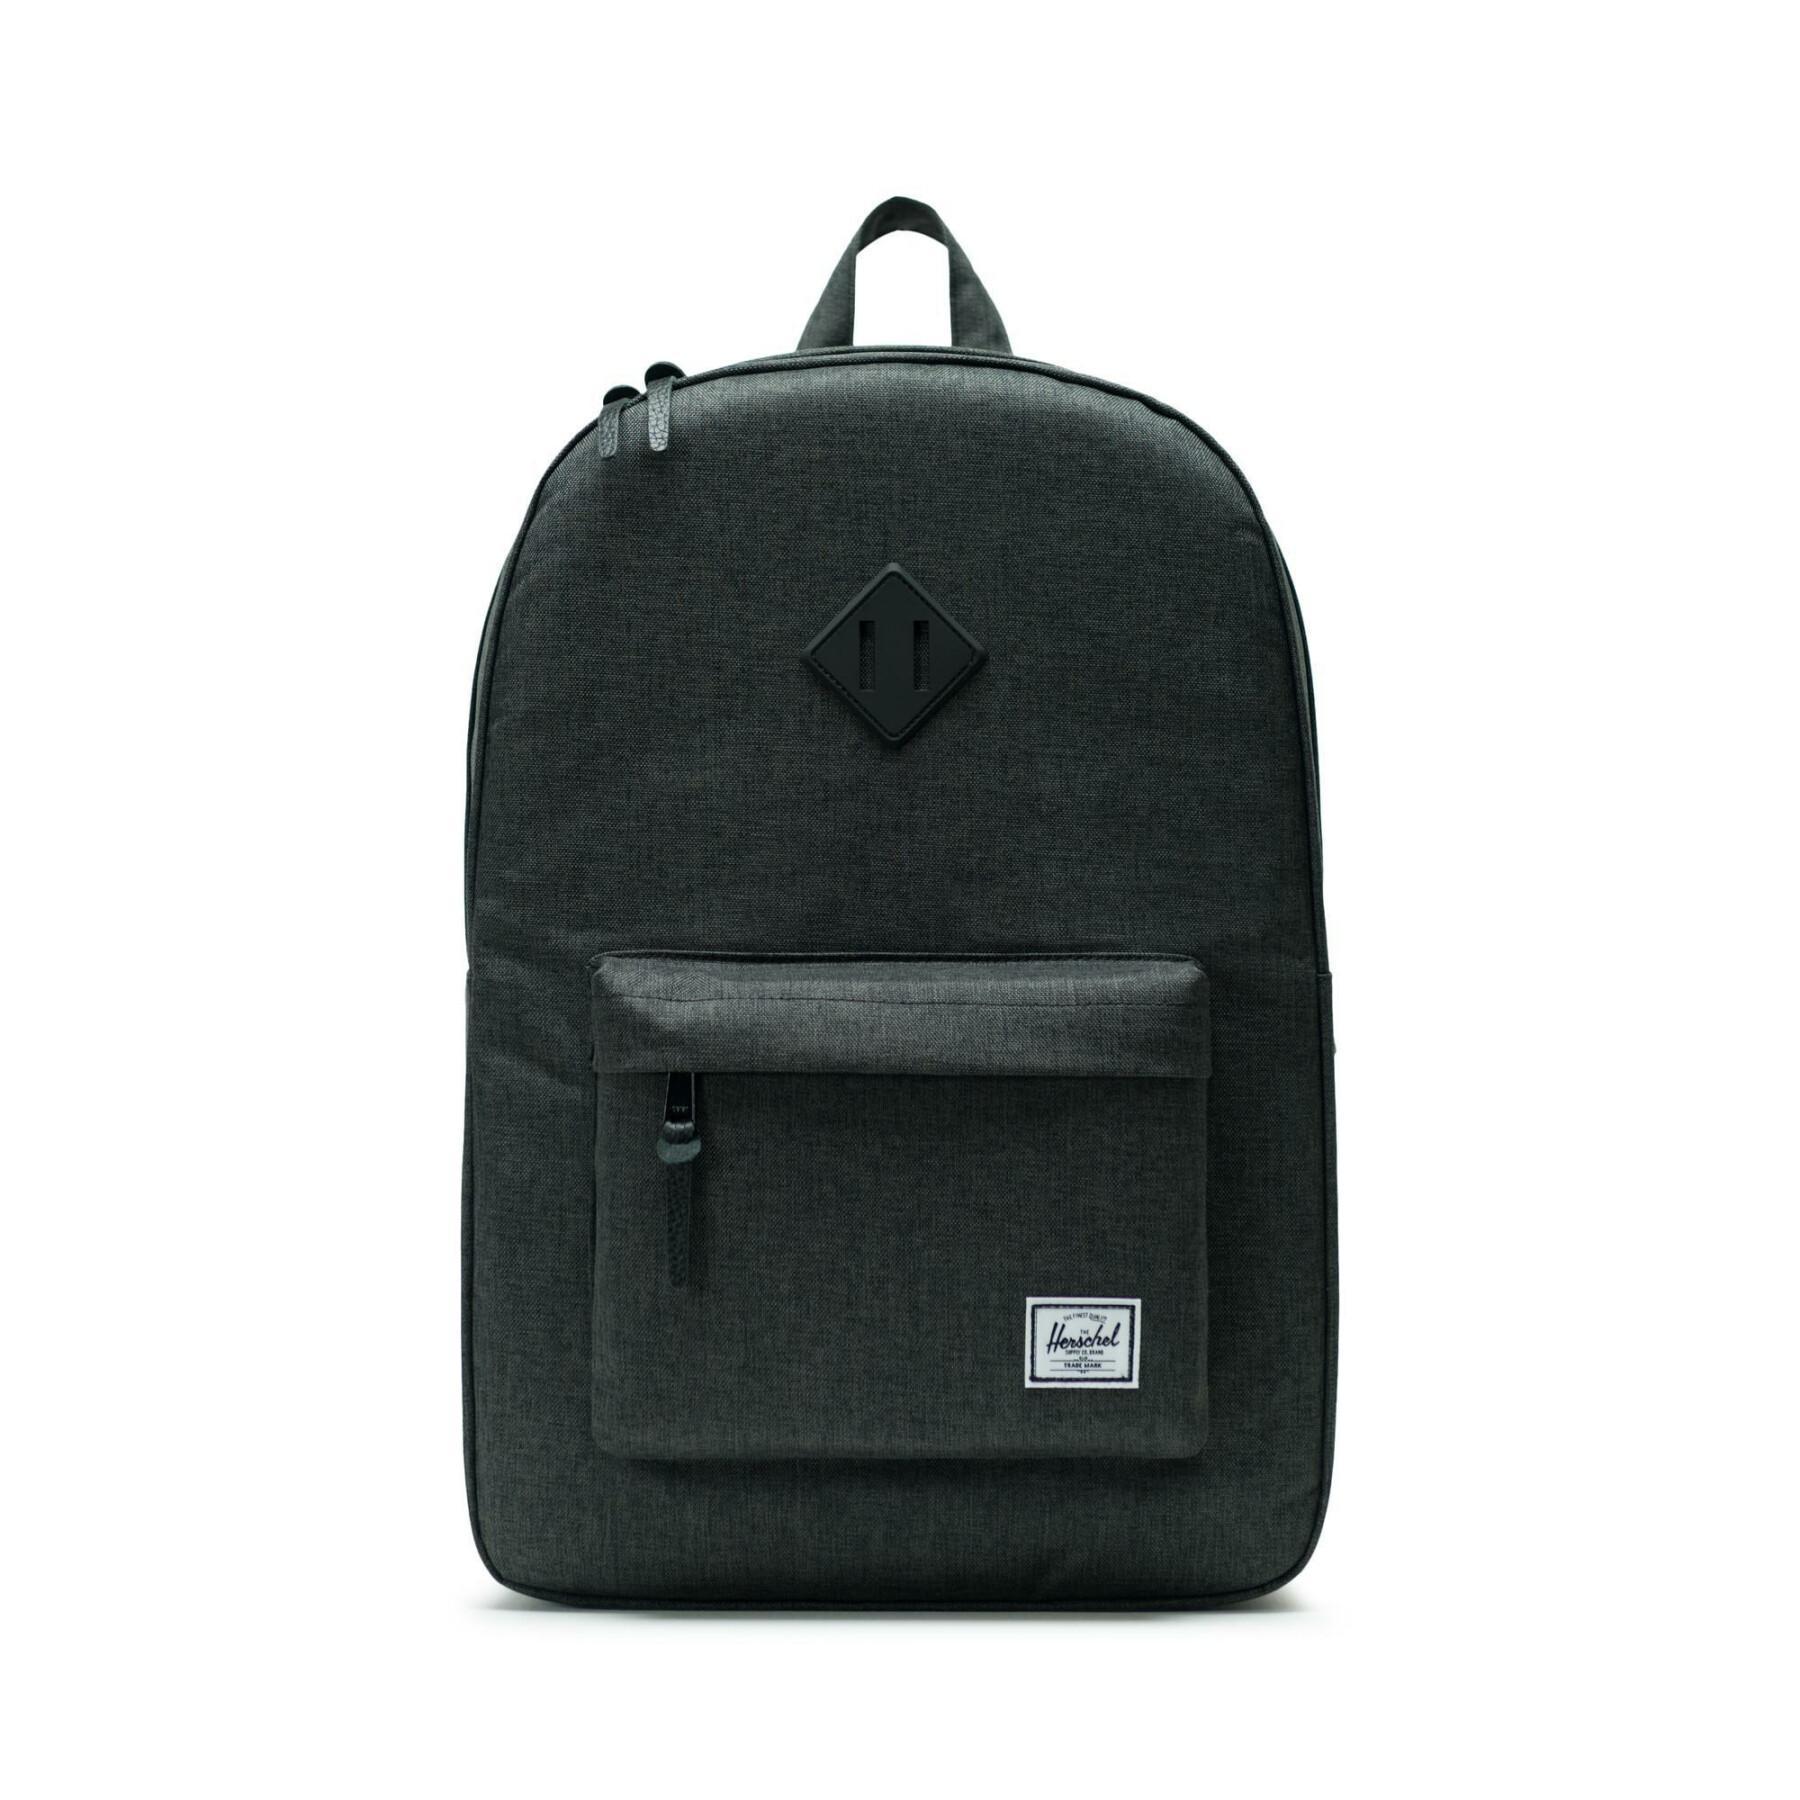 Backpack Herschel heritage black crosshatch/black